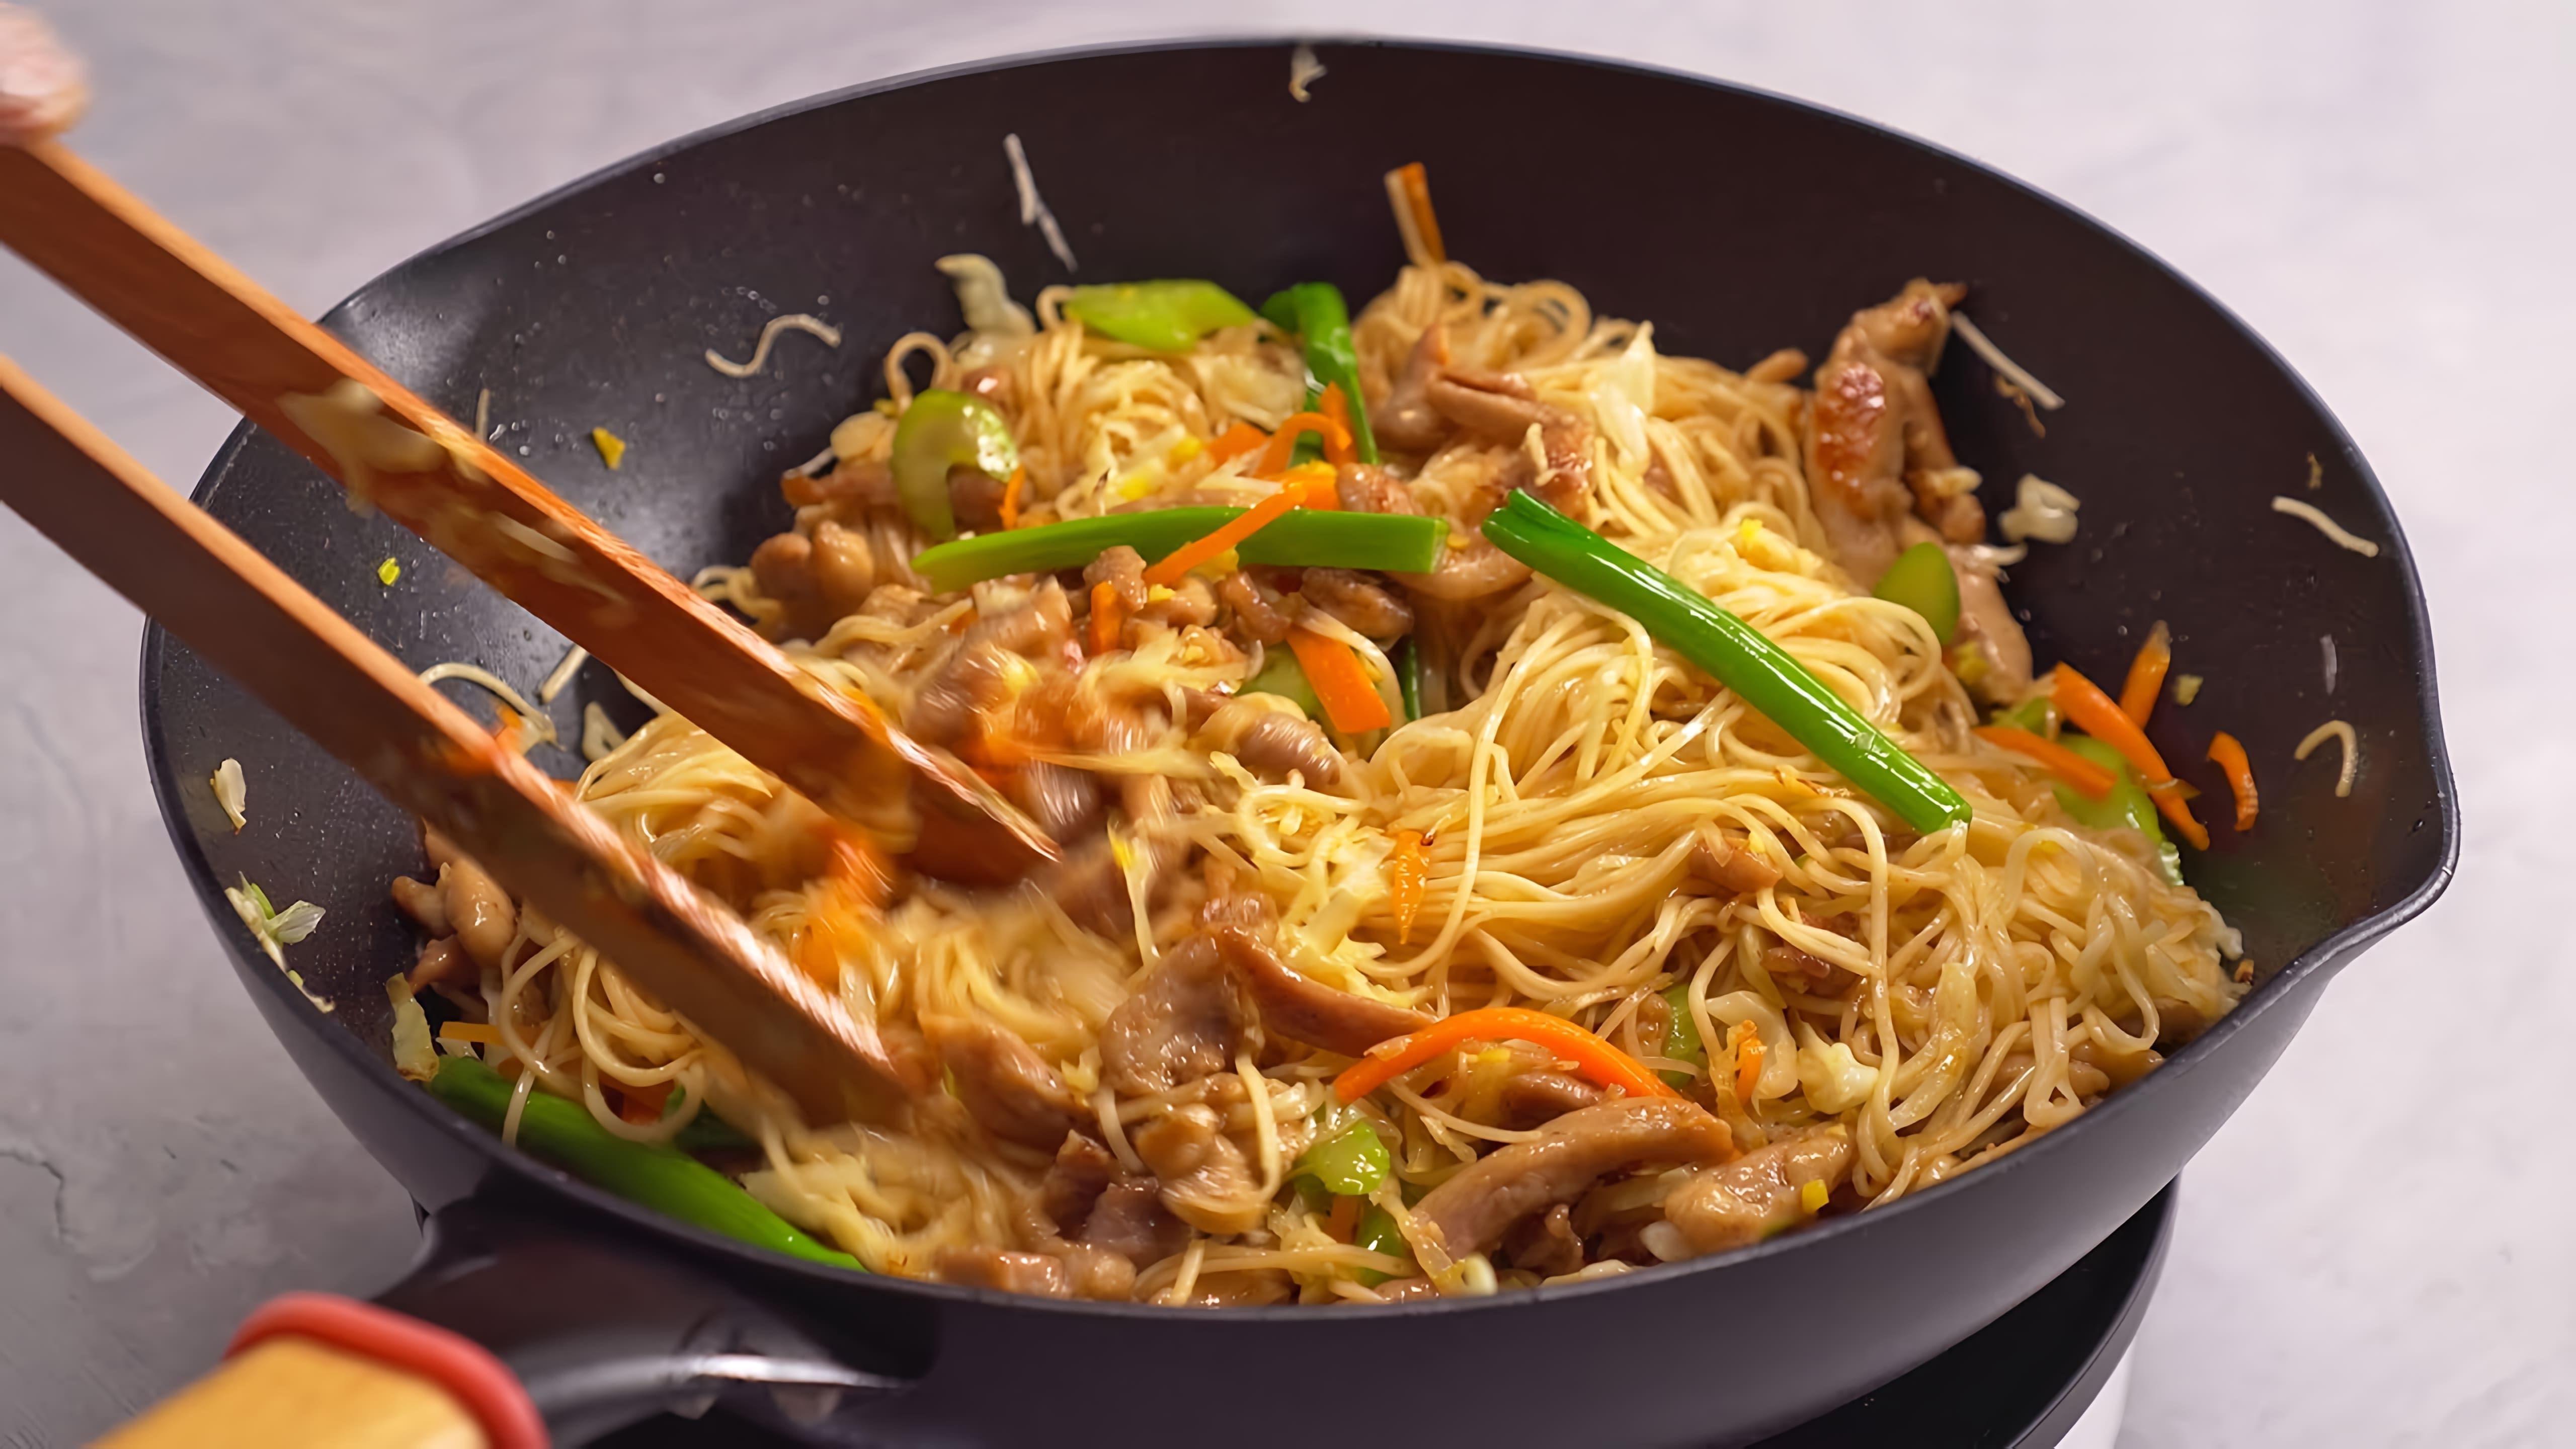 В данном видео демонстрируется рецепт приготовления знаменитого блюда китайской кухни - ЧОУ-МЕЙН с курицей